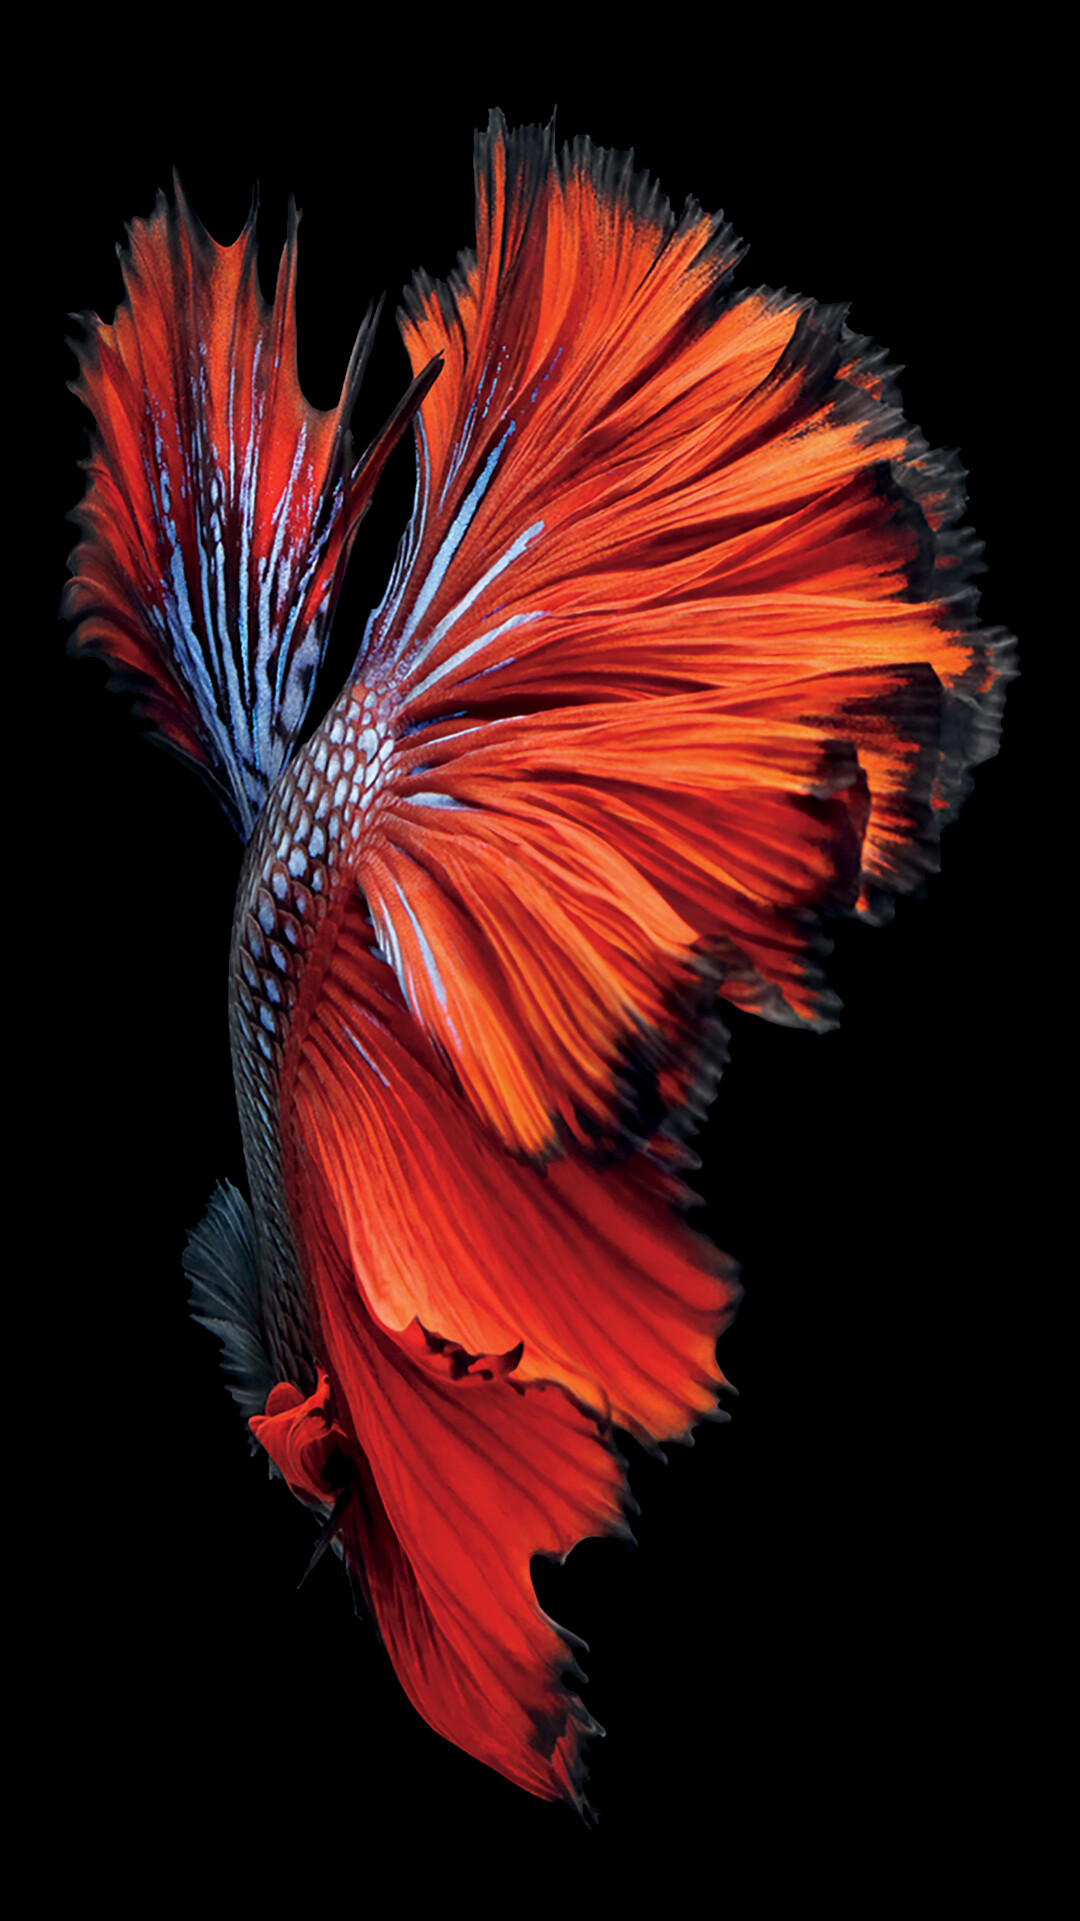 Fish: Betta, Aquatic species, Popular for home aquariums. 1080x1930 HD Wallpaper.